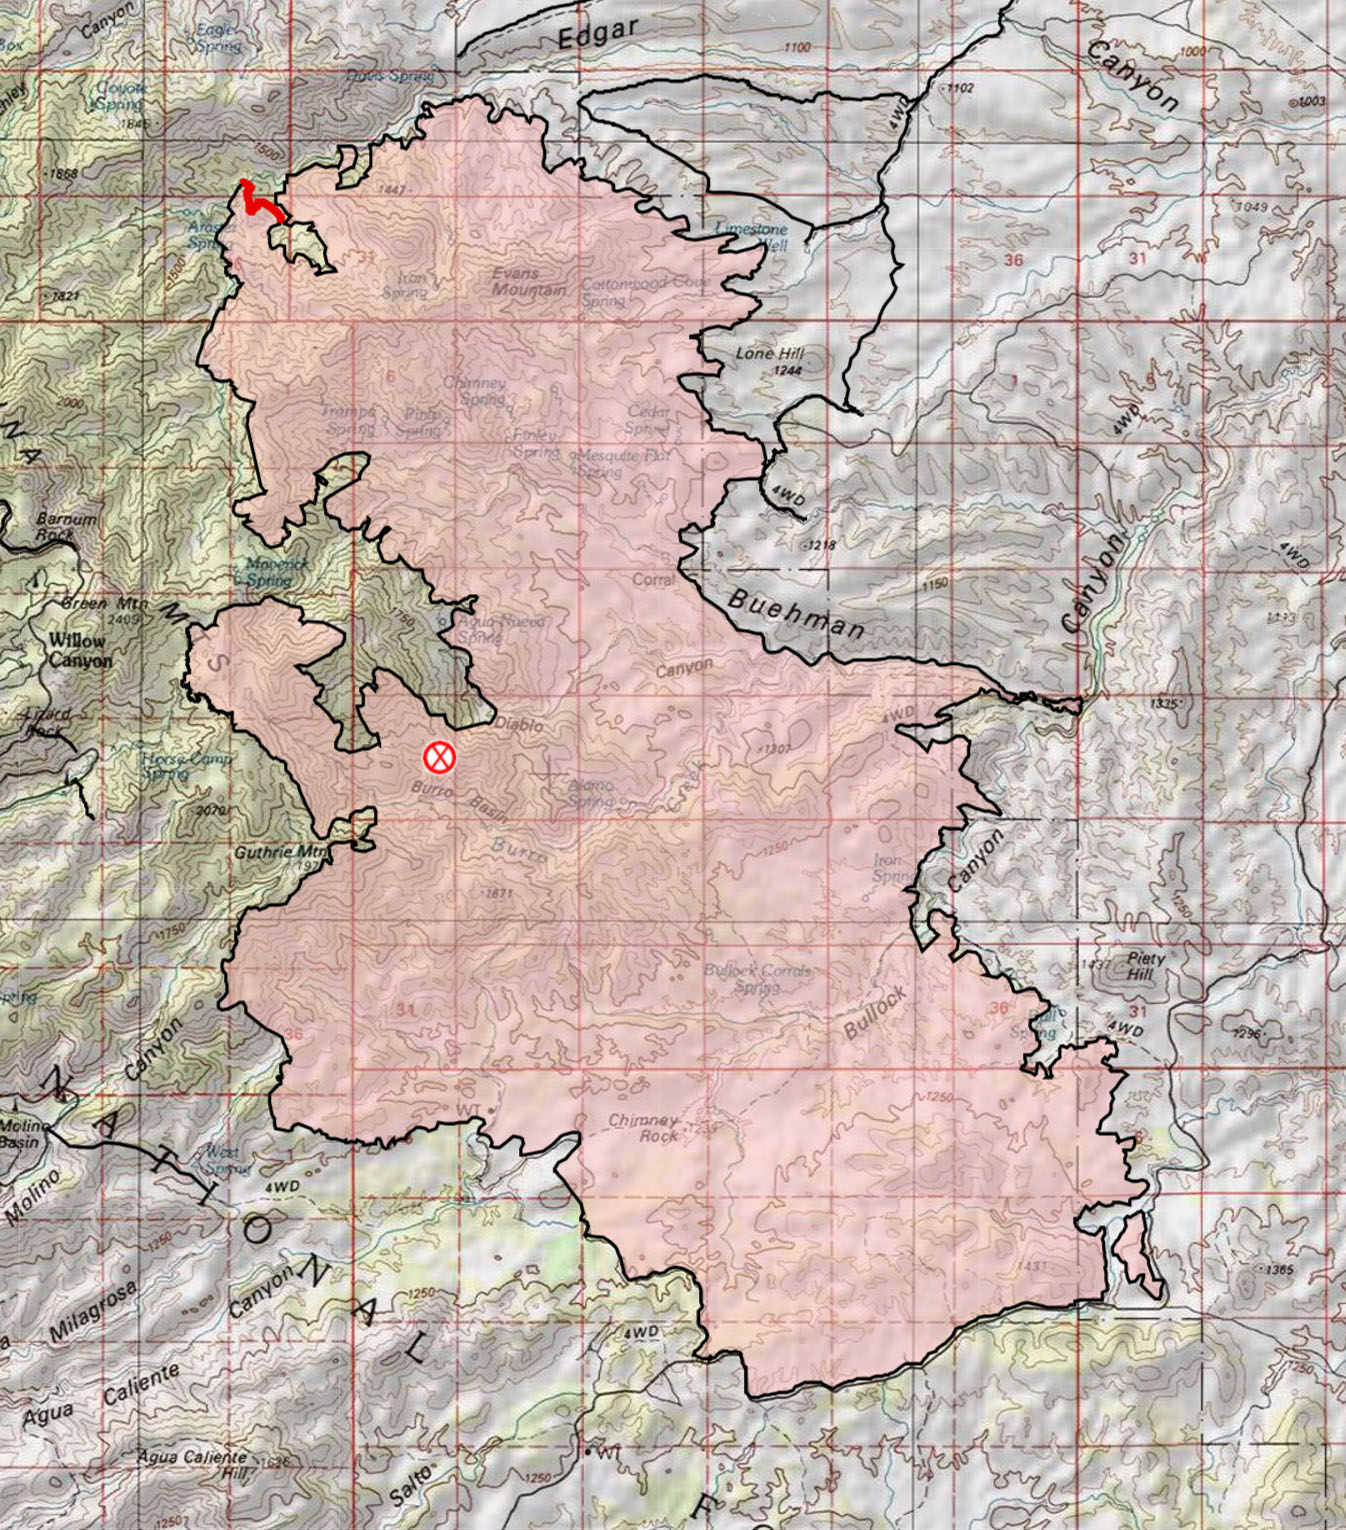 Burro Fire Topo Map - Final Update. July 2017.